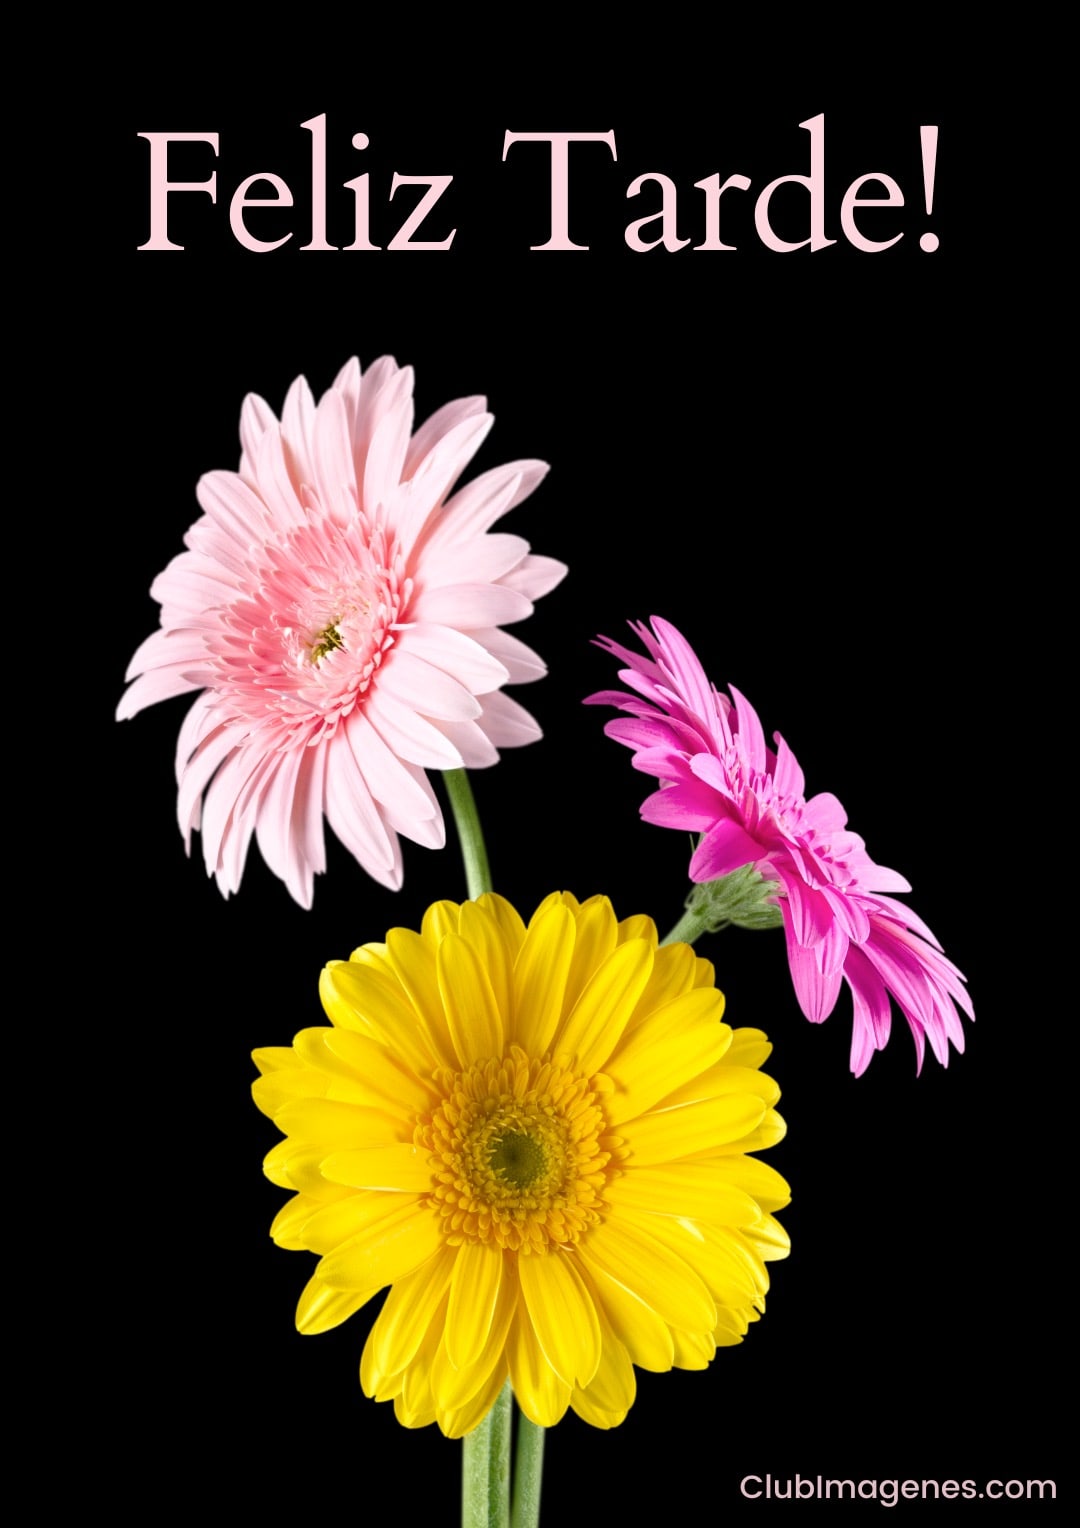 Flores amarilla y rosa sobre fondo negro con texto 'Feliz Tarde!' arriba